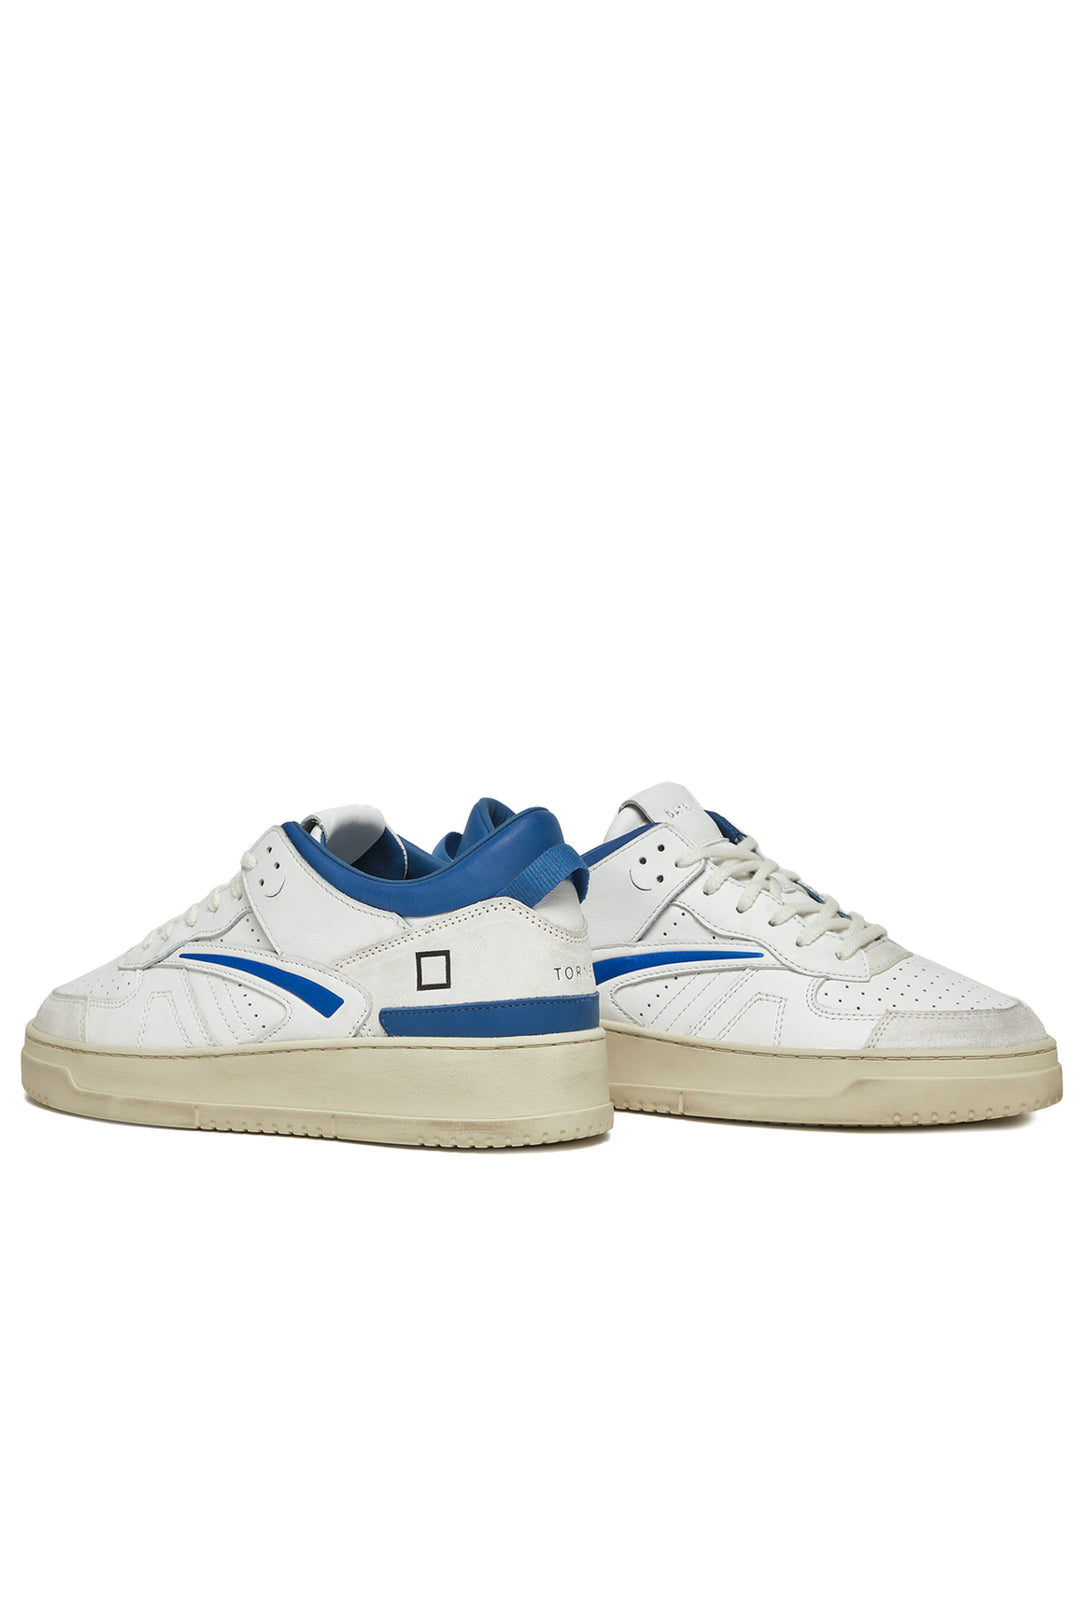 DATE Sneaker TORNEO LEATHER WHITE-BLUETTE - Mancinelli 1954